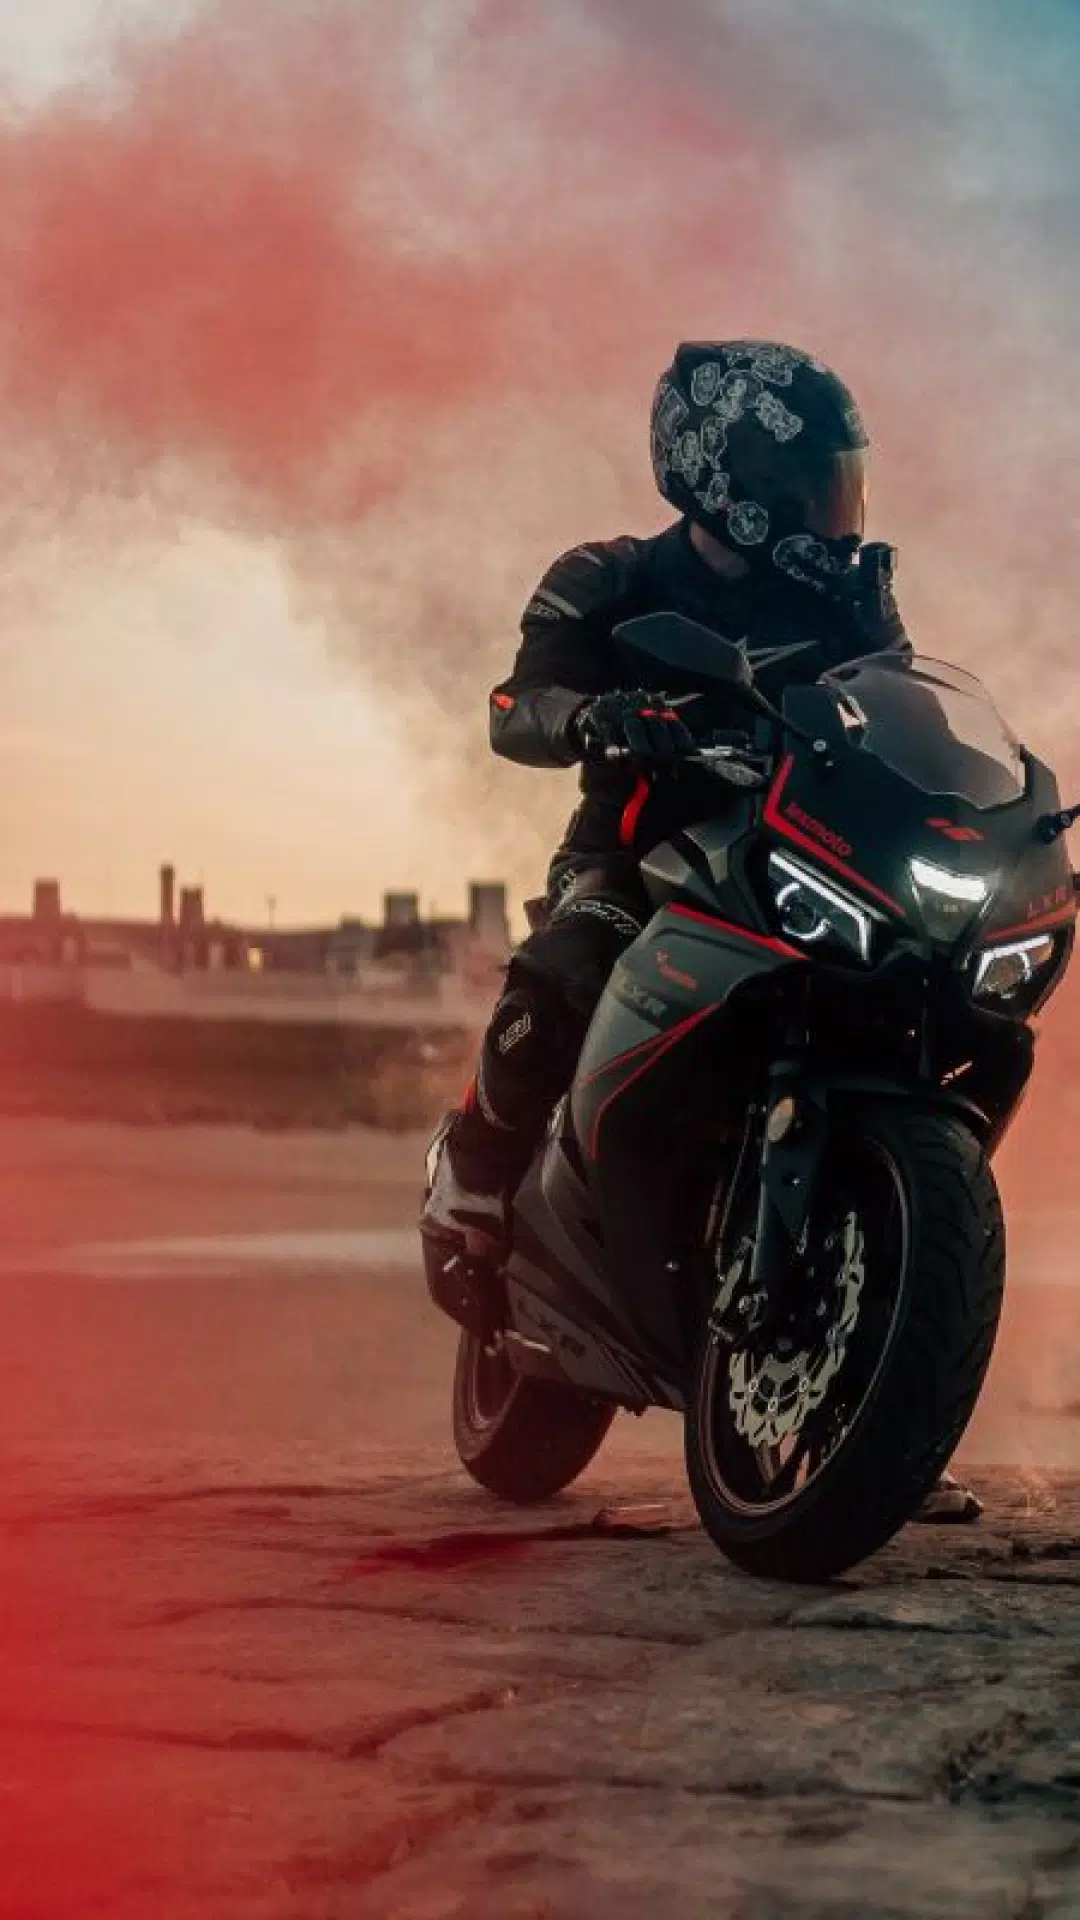  Motorrad Hintergrundbild 1080x1920. Motorcycle Wallpaper APK für Android herunterladen